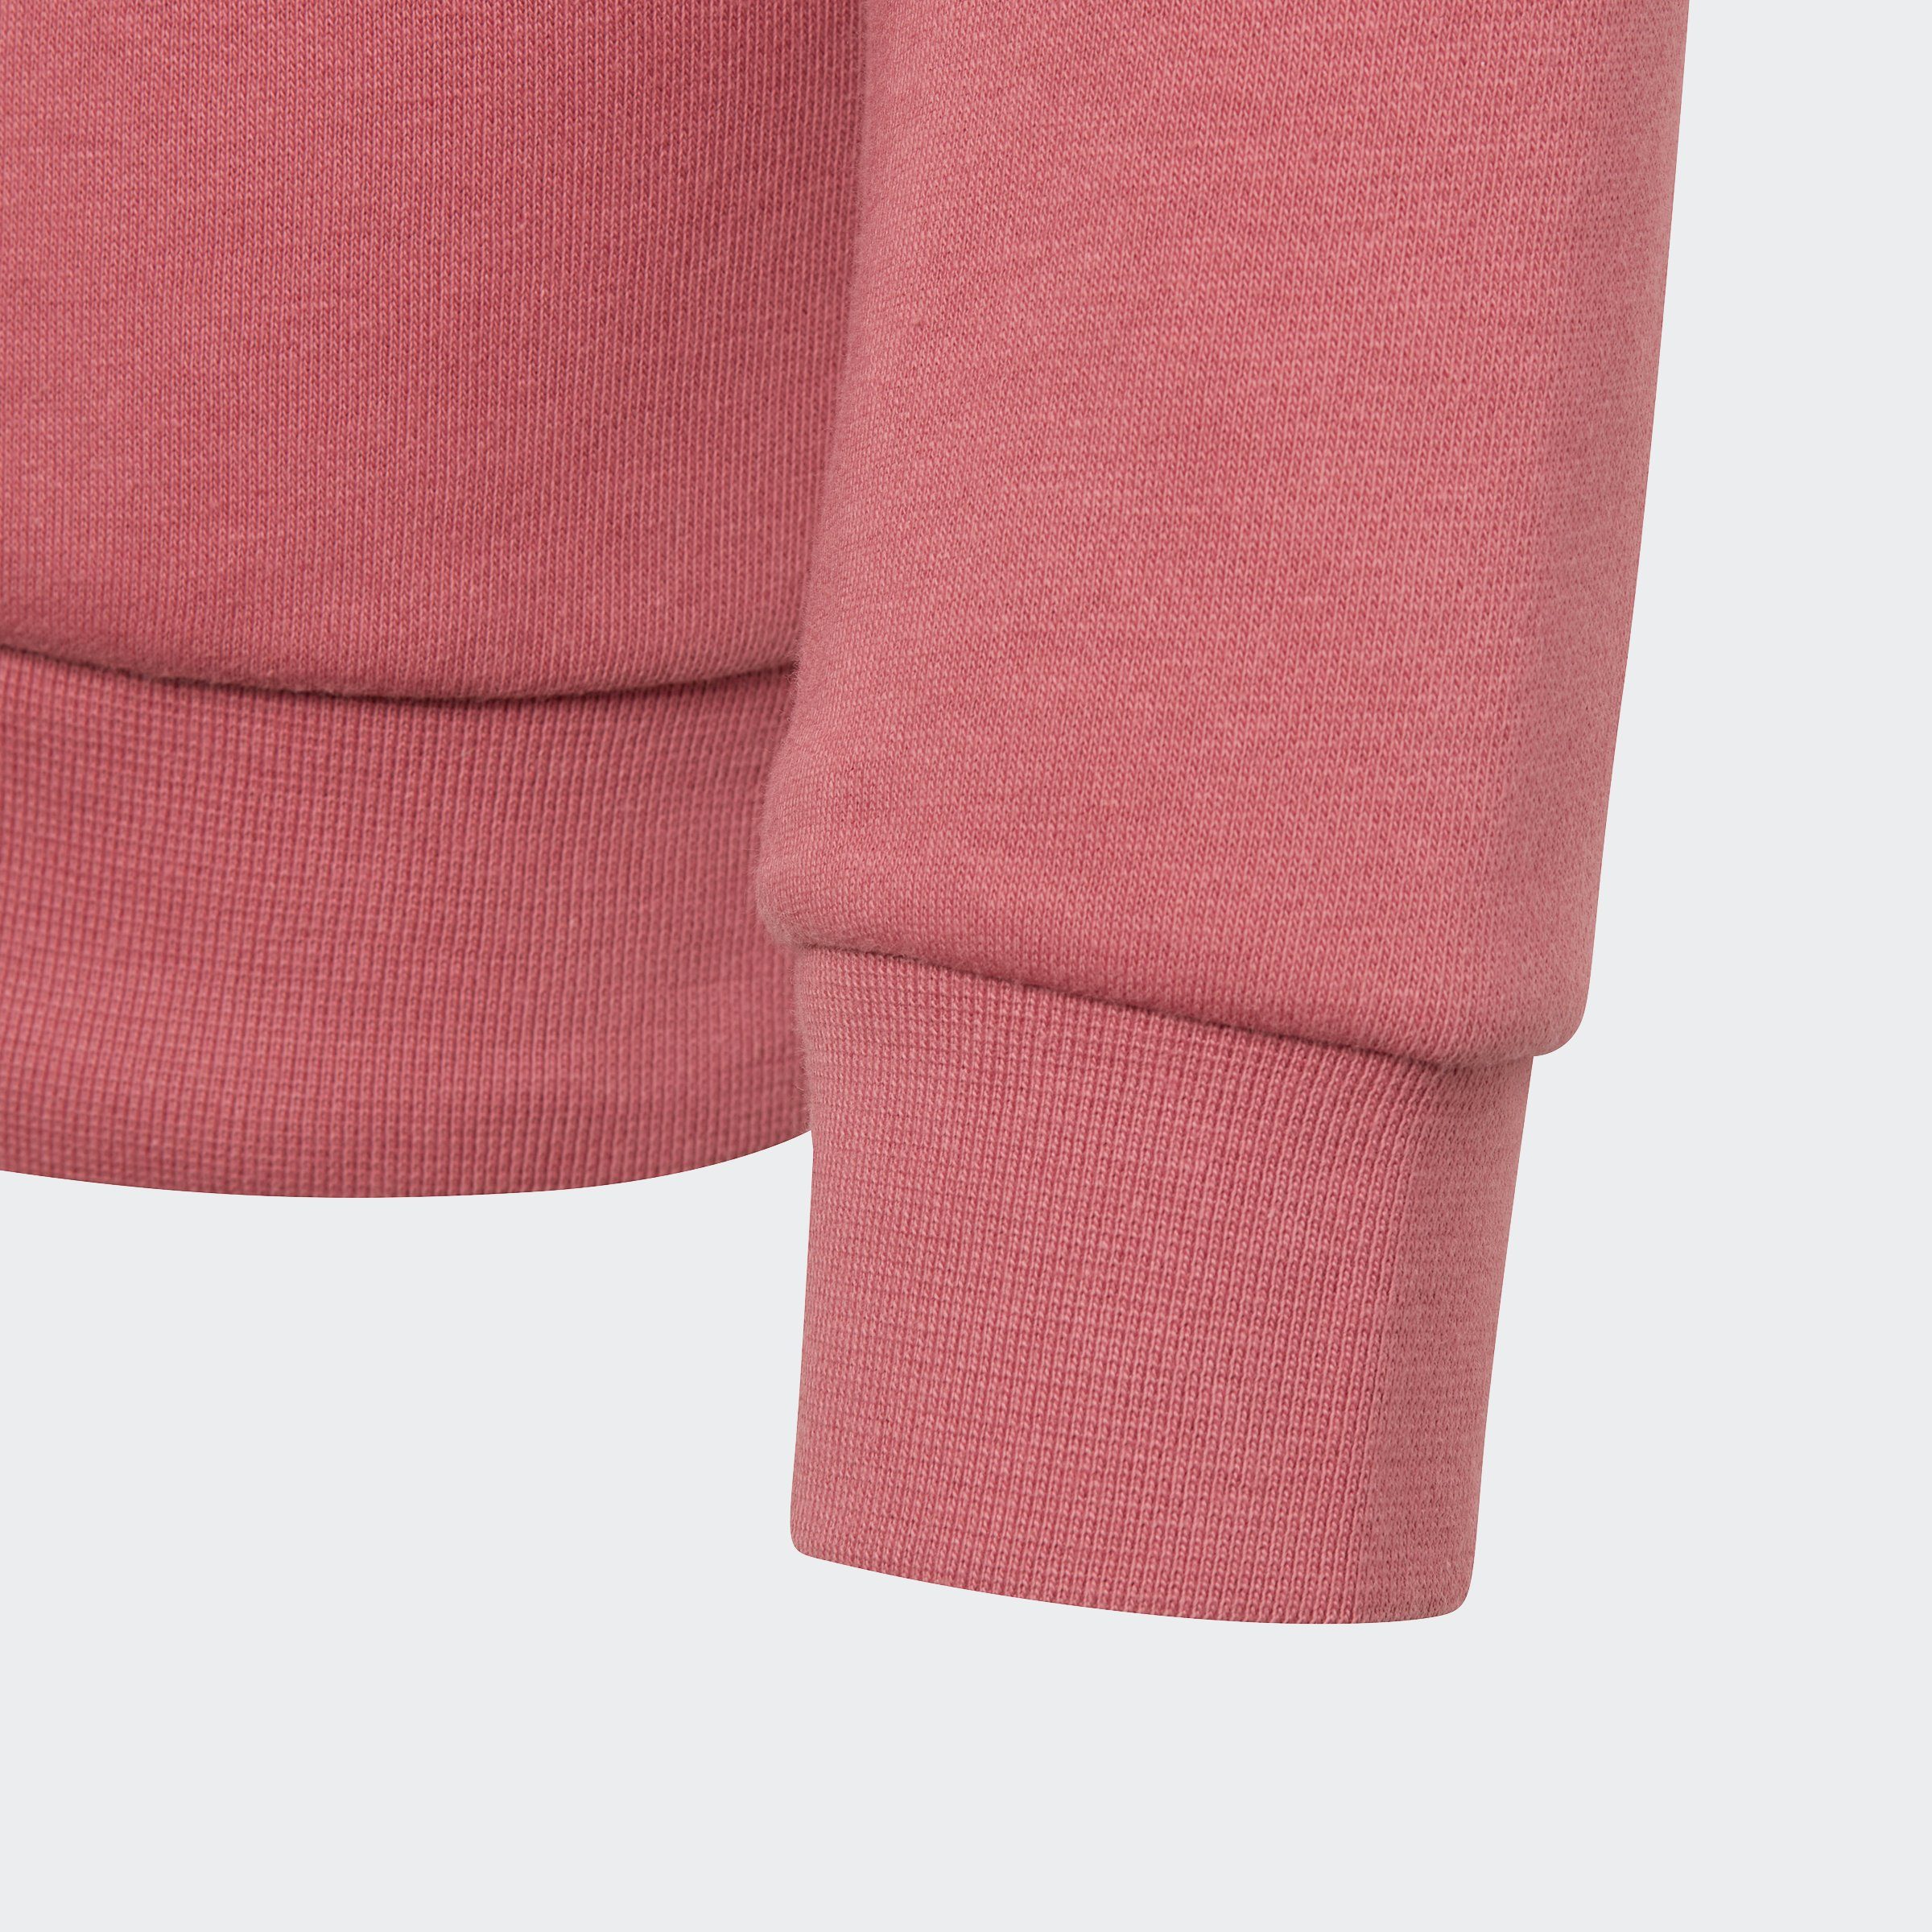 adidas Originals Sweatshirt Strata ADICOLOR Pink